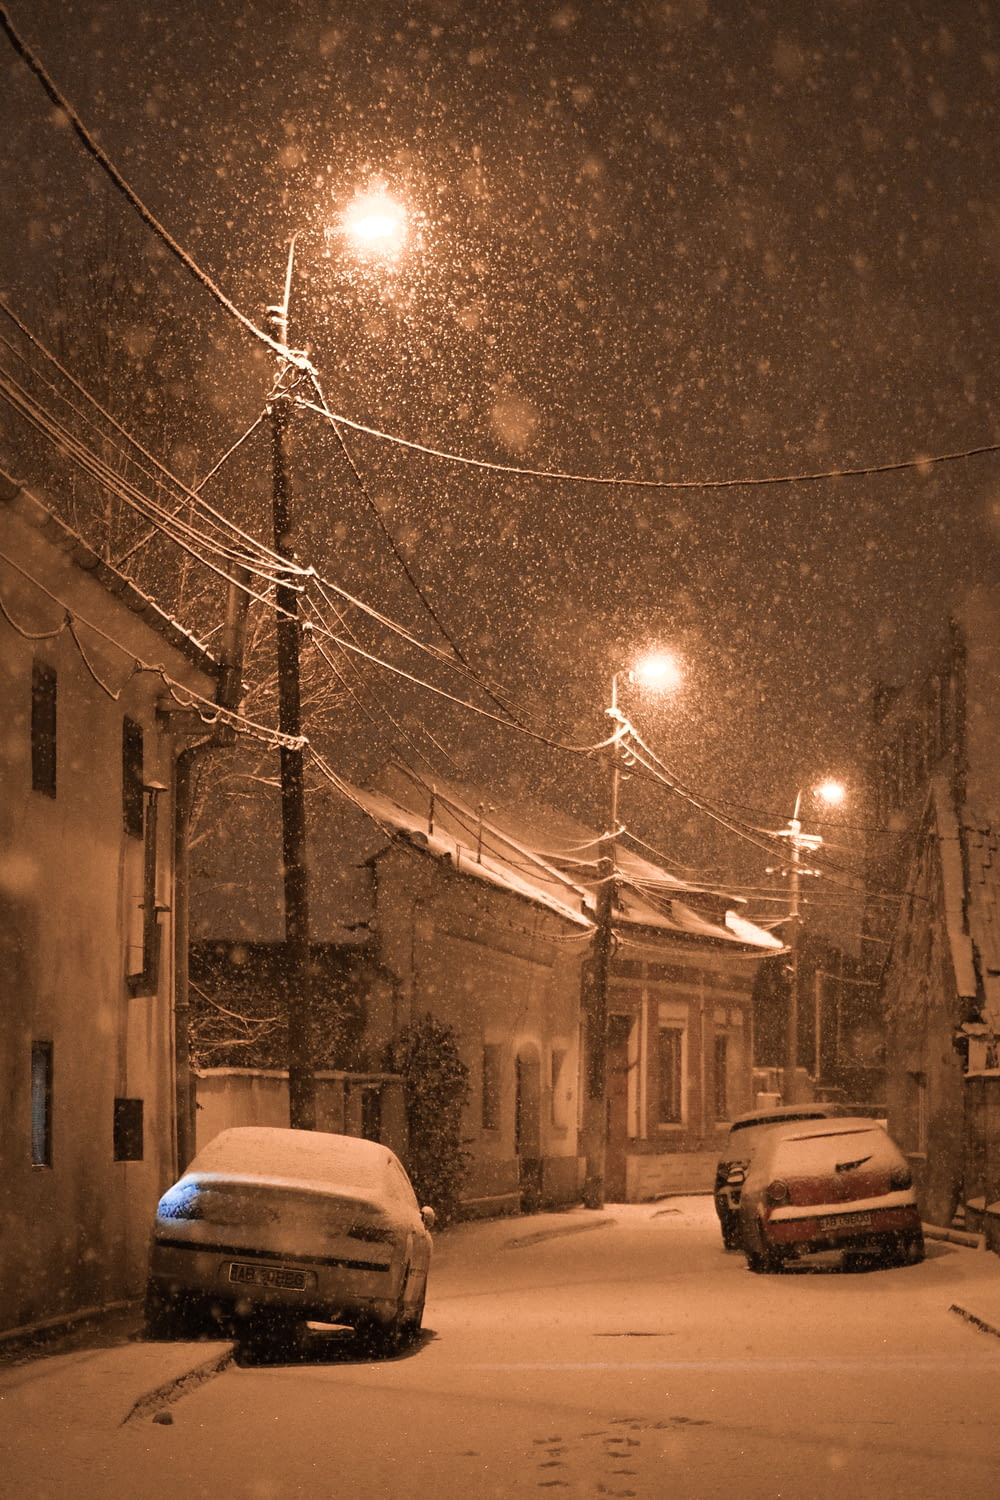 dois carros estacionados em uma rua nevada à noite